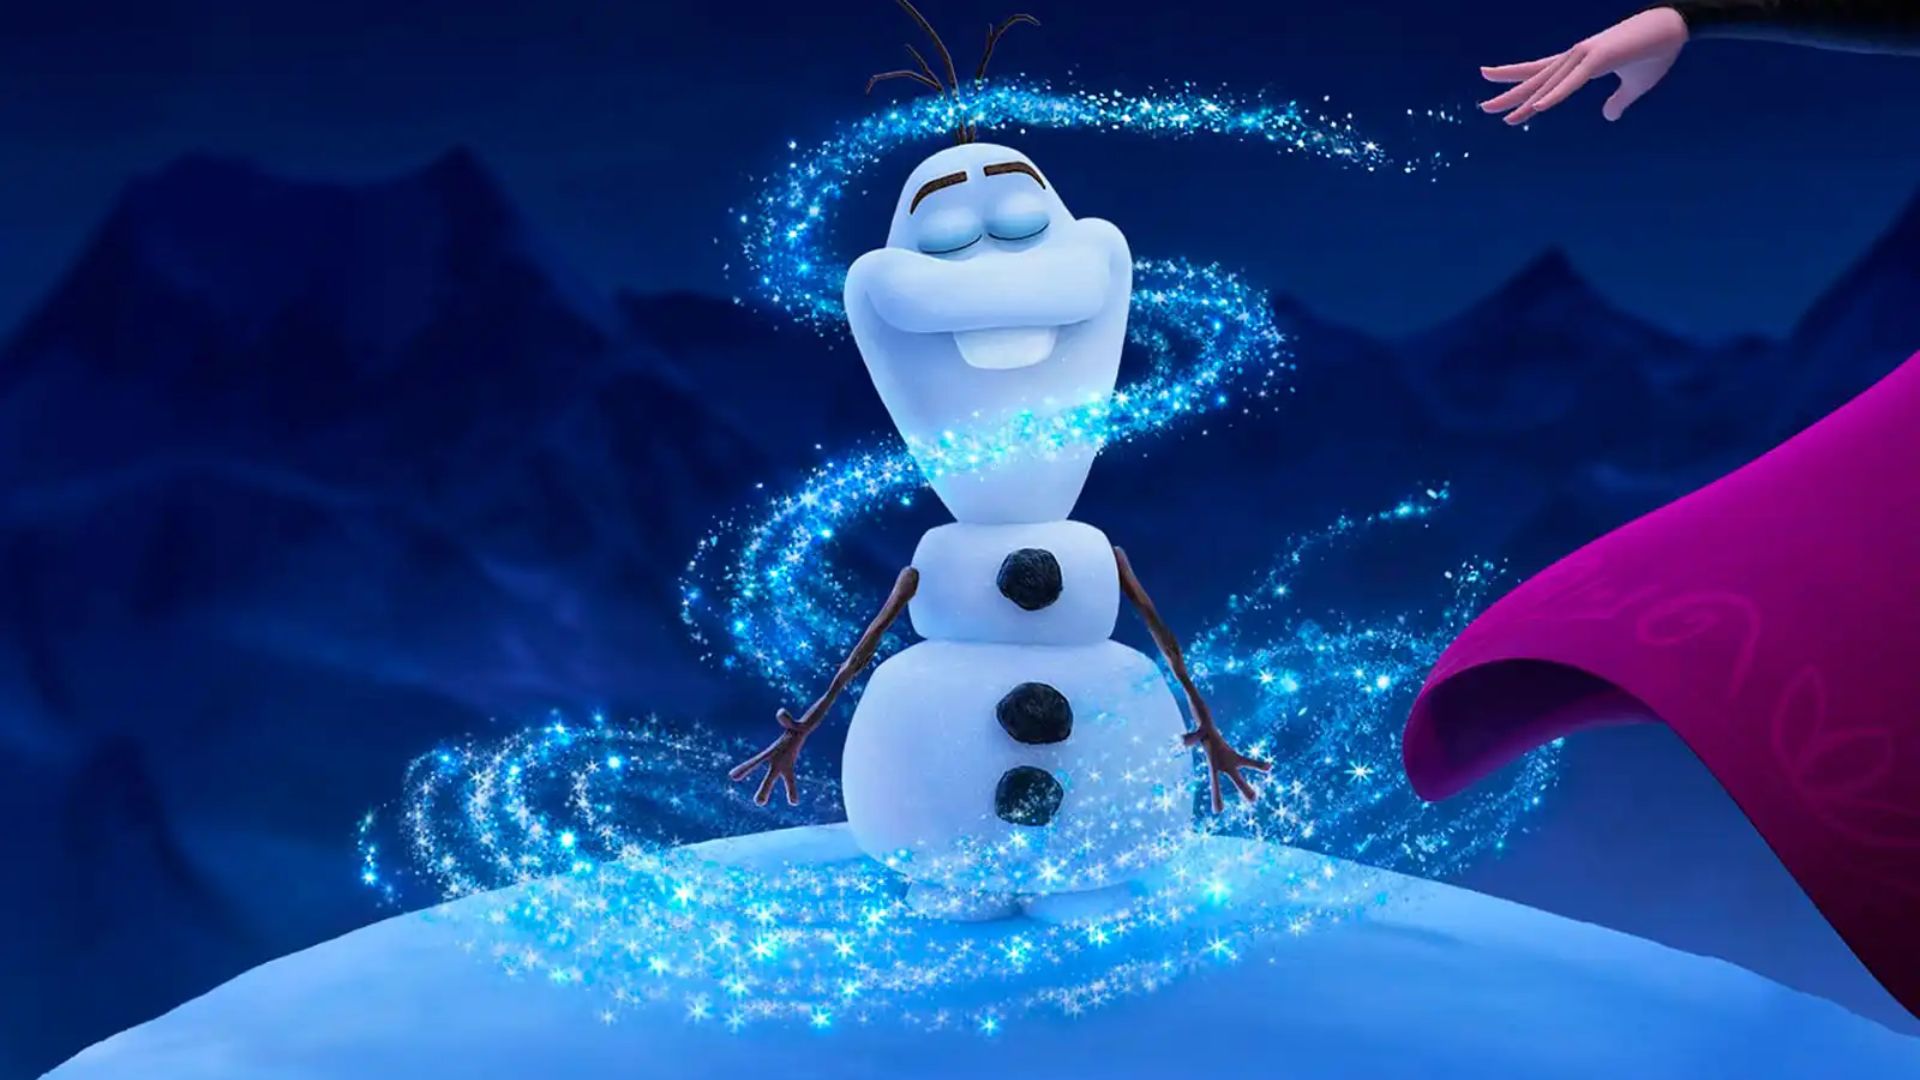 Quieres... a un hombre de nieve? Directora de Frozen odiaba Olaf, ¡y lo quería eliminar! - & Nacho